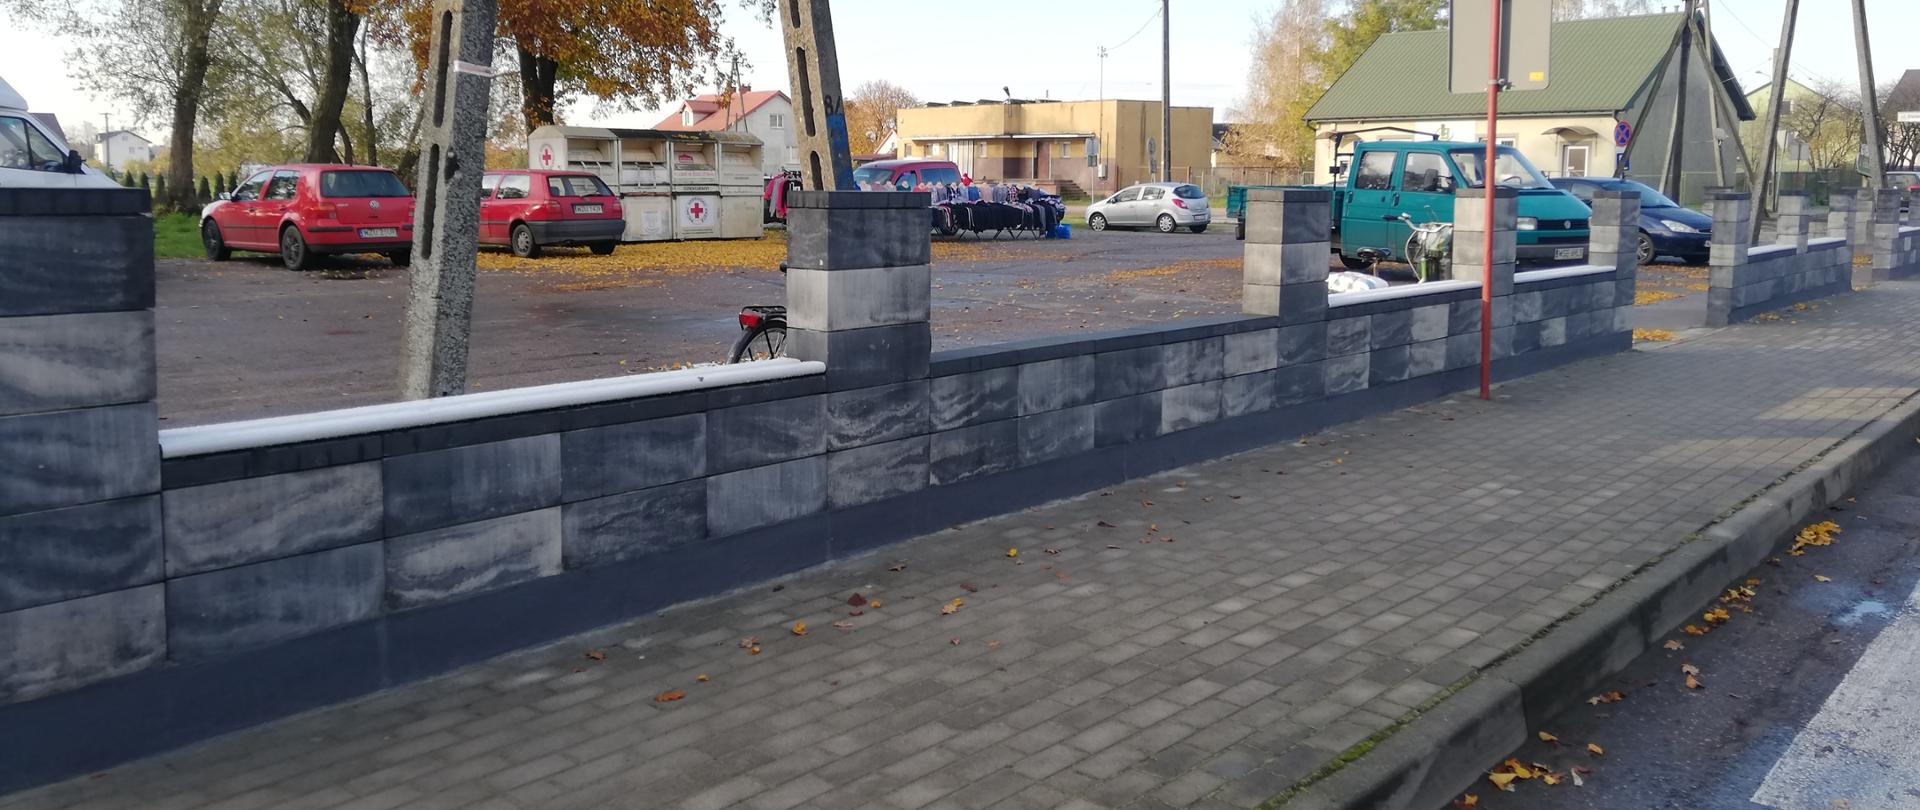 Zdjęcie przedstawia ogrodzenie parkingu gminnego przy Placu Kościuszki w Lutocinie.